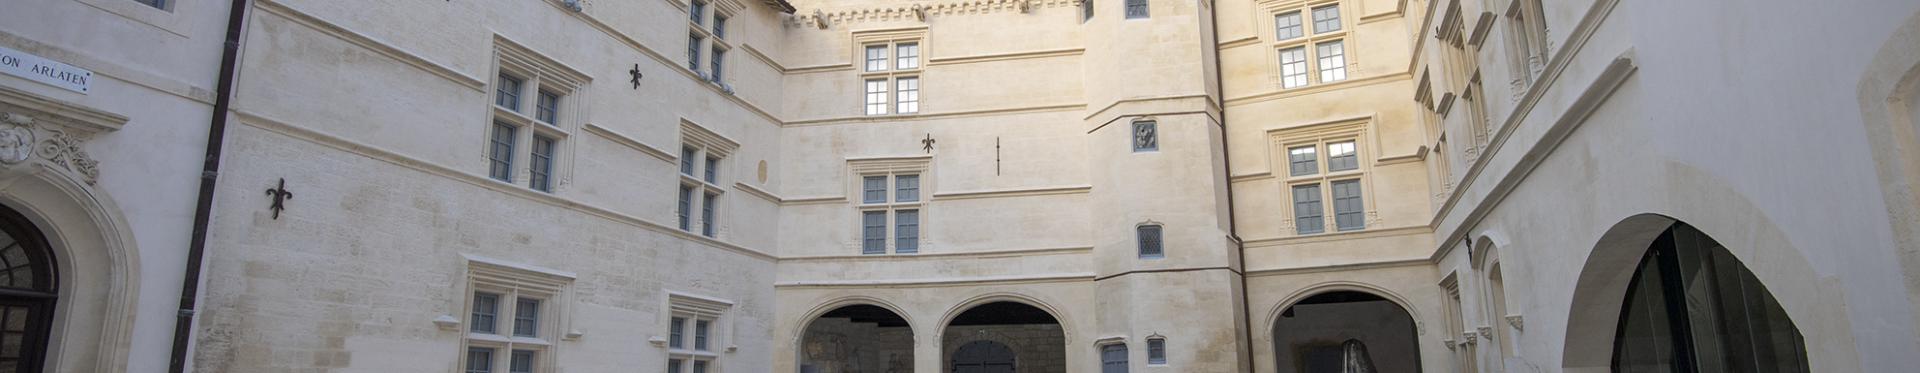 La cour du Museon Arlaten, avec ses vestiges romains classés par l'Unesco.